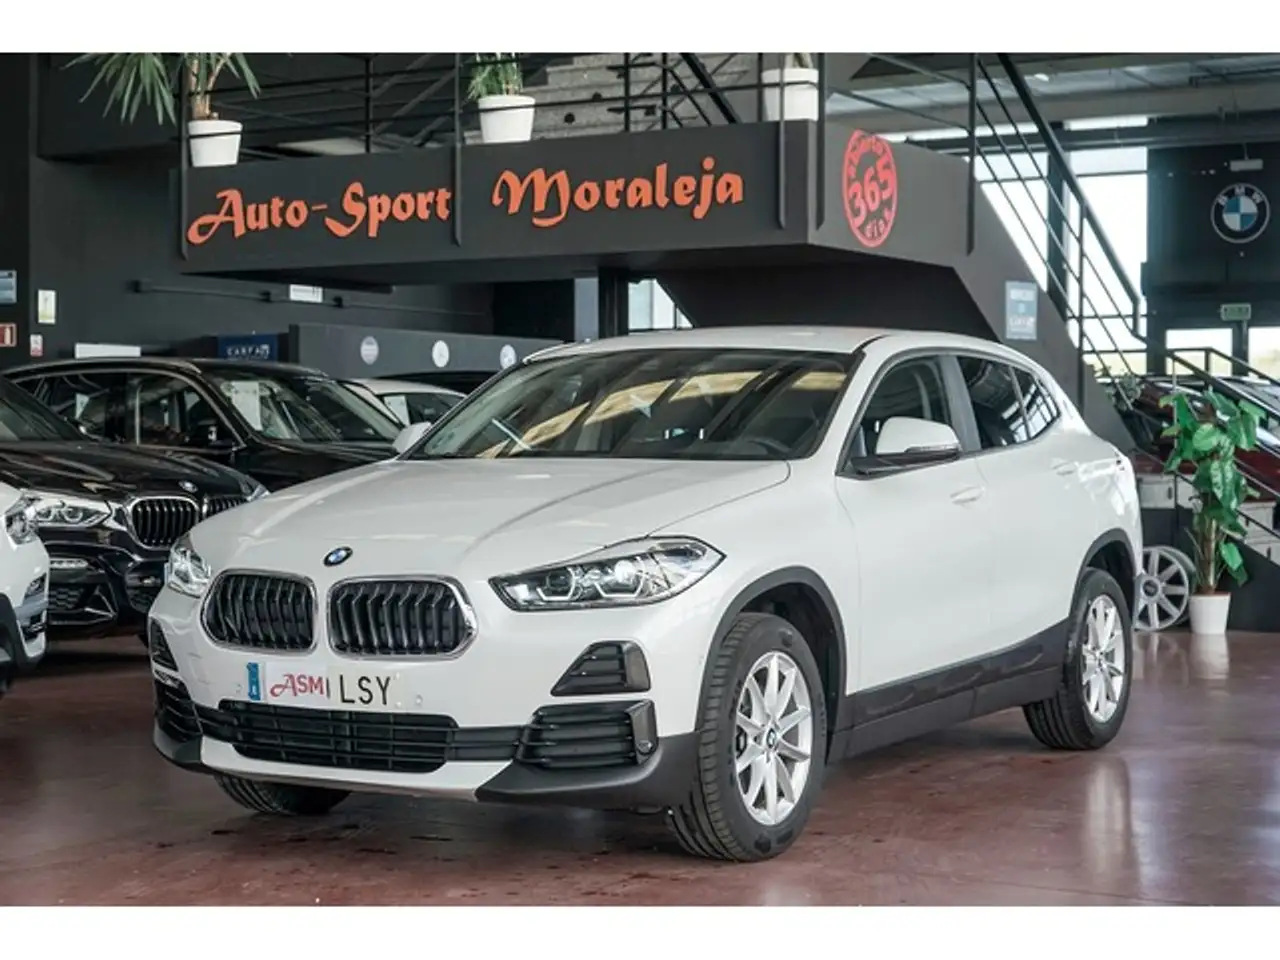 BMW X2 SUV/4x4/Pick-up in Wit tweedehands in ARROYOMOLINOS voor € 24.900,-